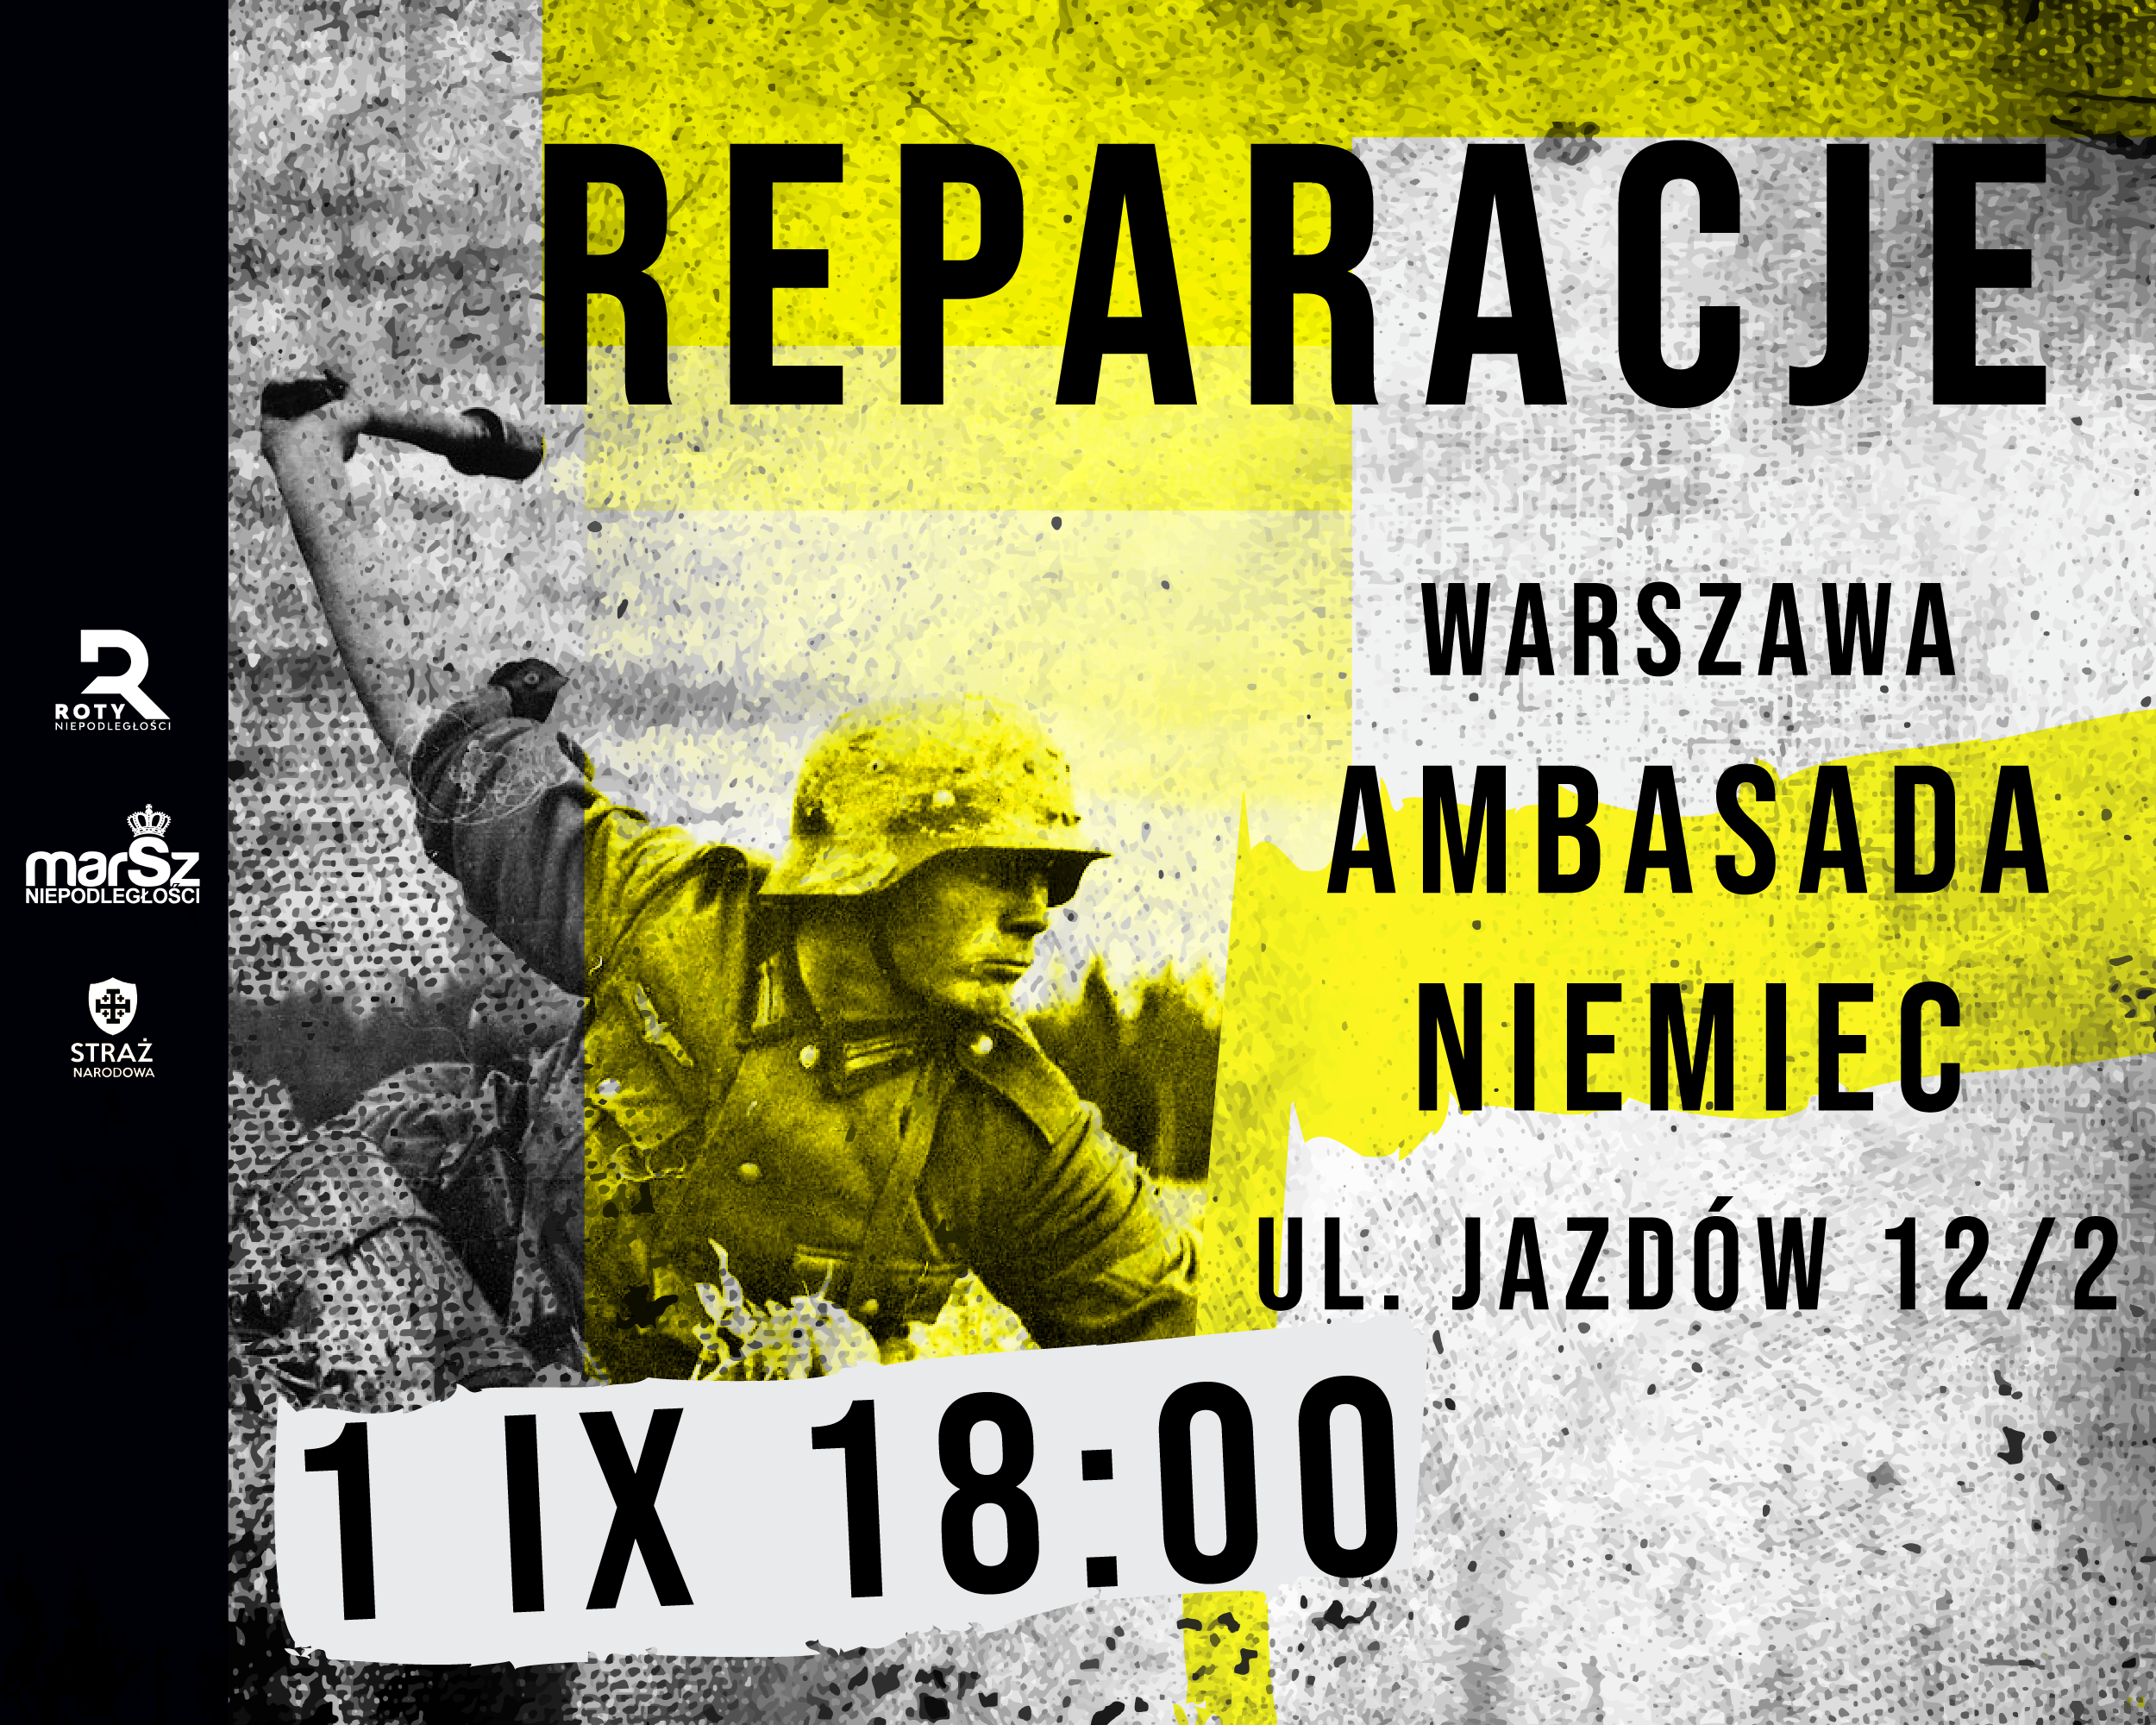 Reparacje! Wesprzyj organizację pikiety pod ambasadą RFN w dniu wybuchu II Wojny Światowej - 1.09.2022